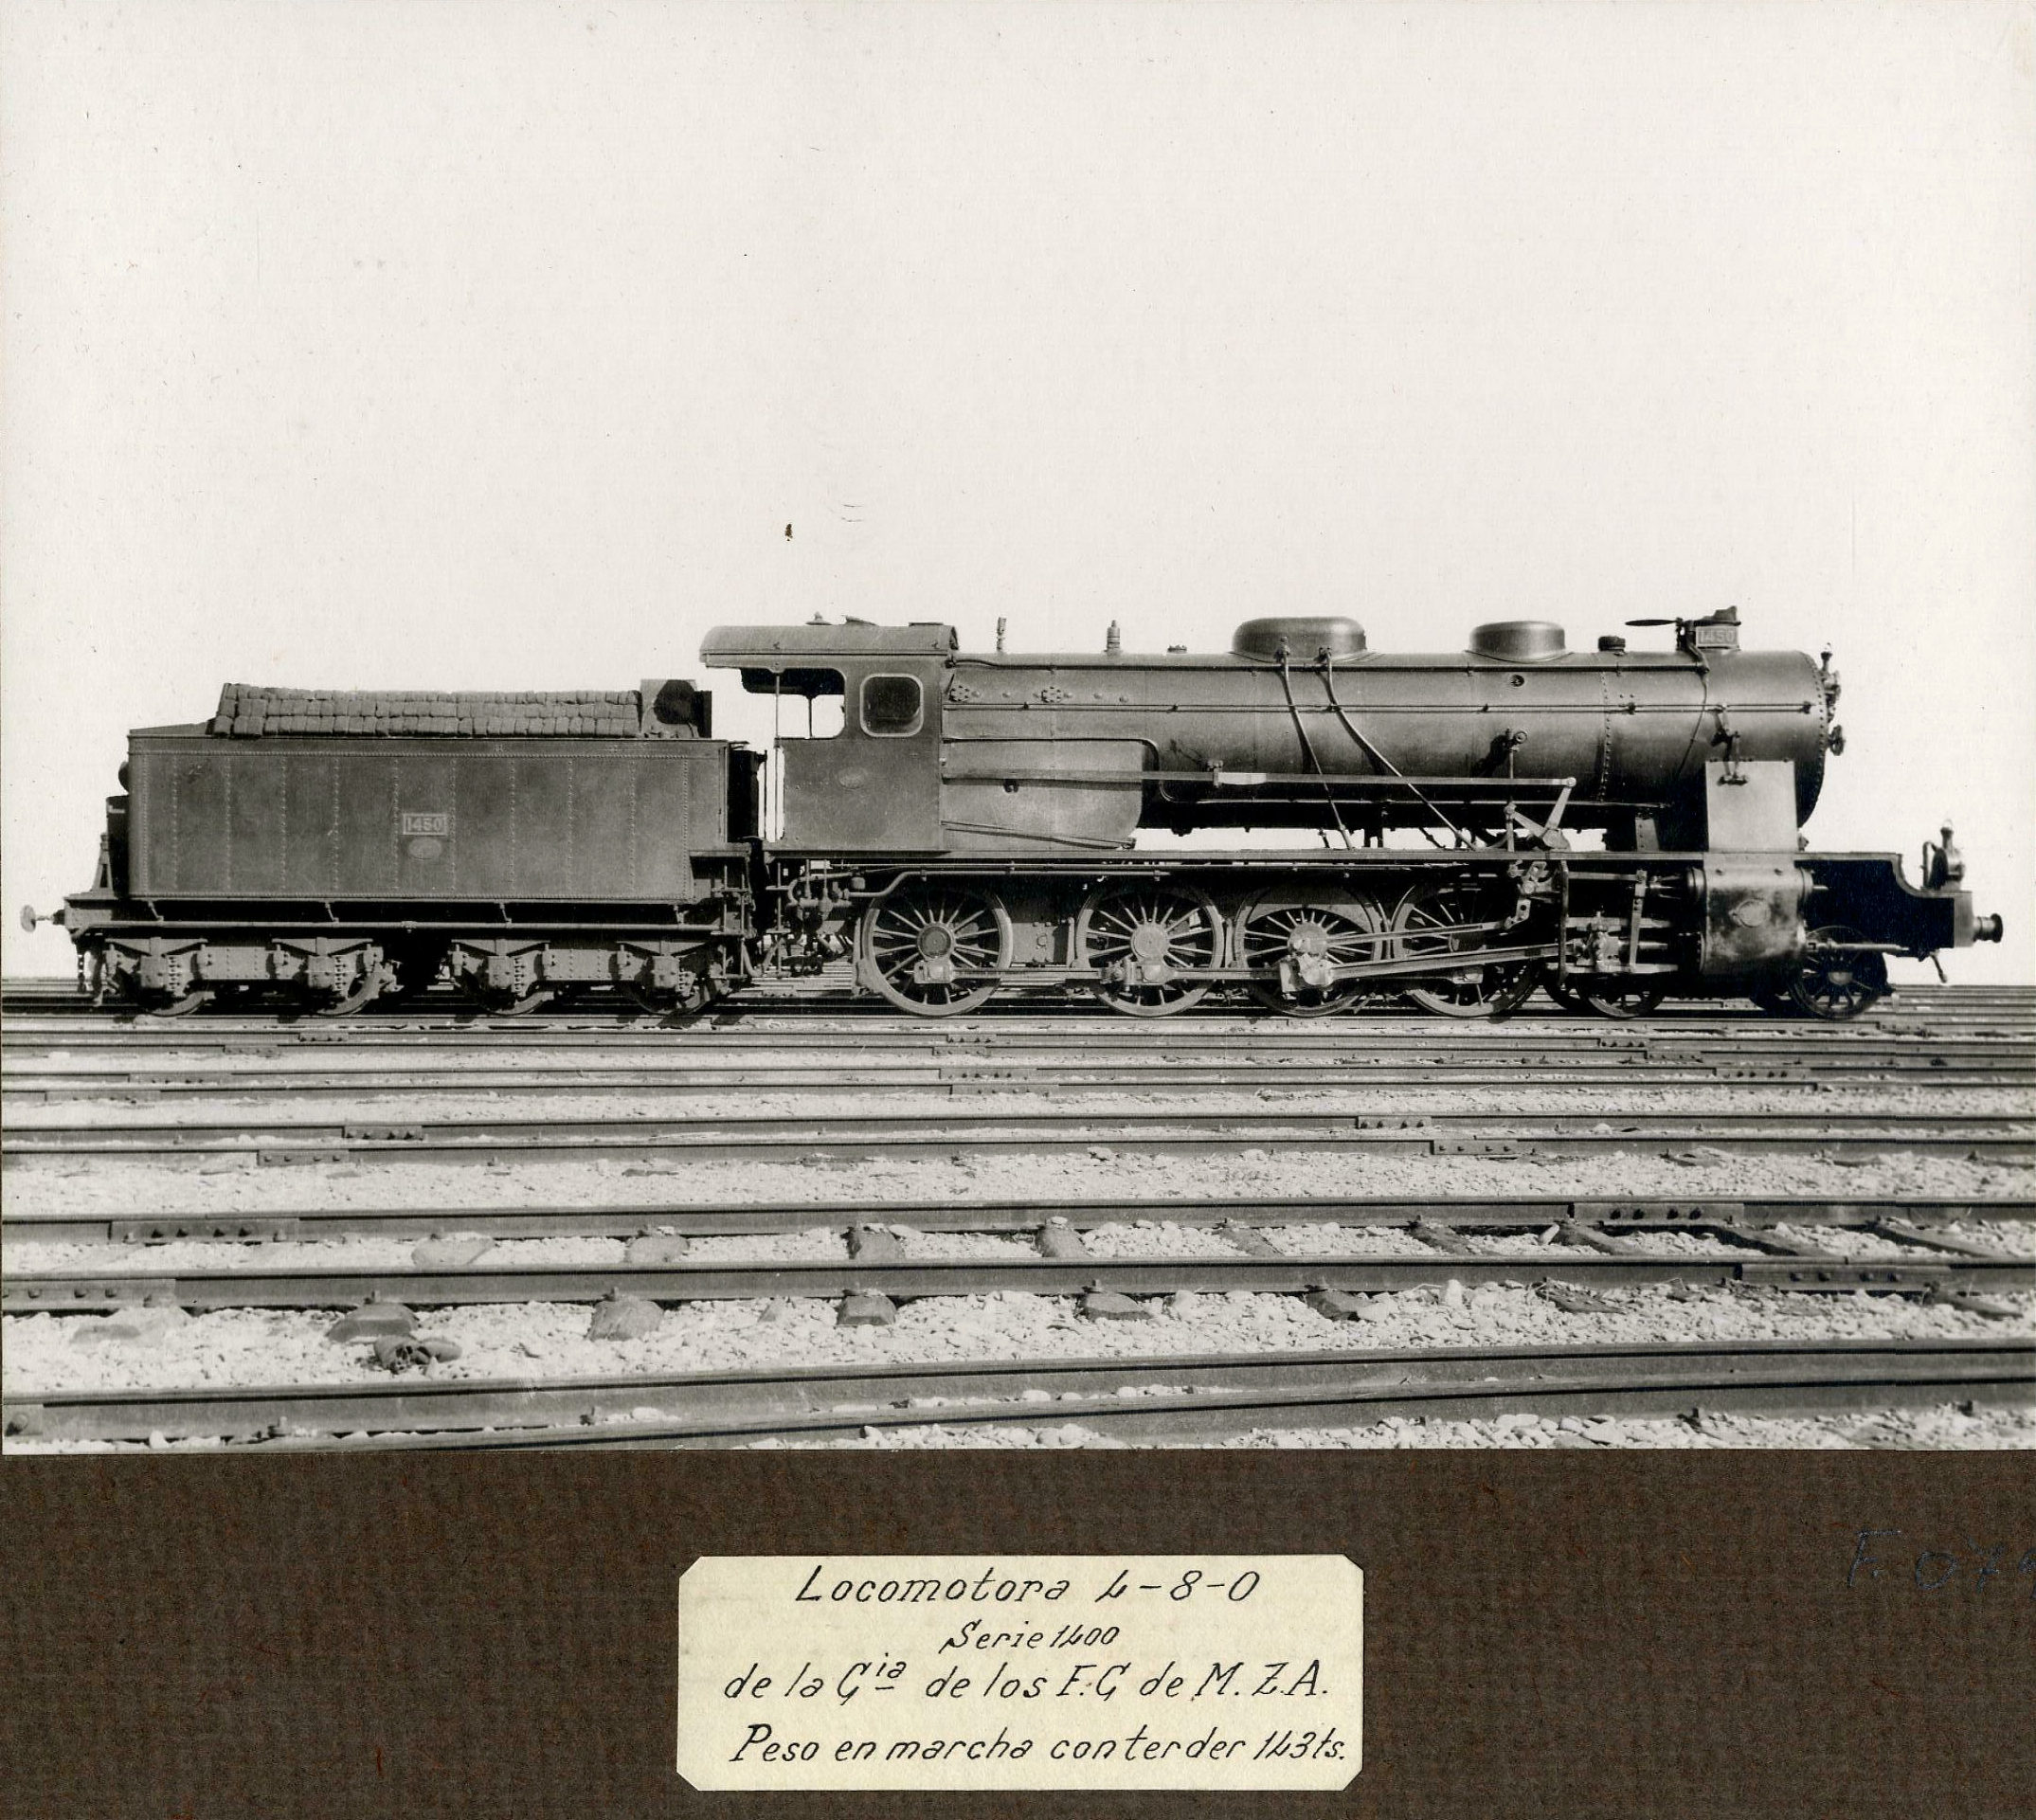 Locomotora 4-8-0, serie 1400, de la Cía de los F.C. de M.Z.A. 1900